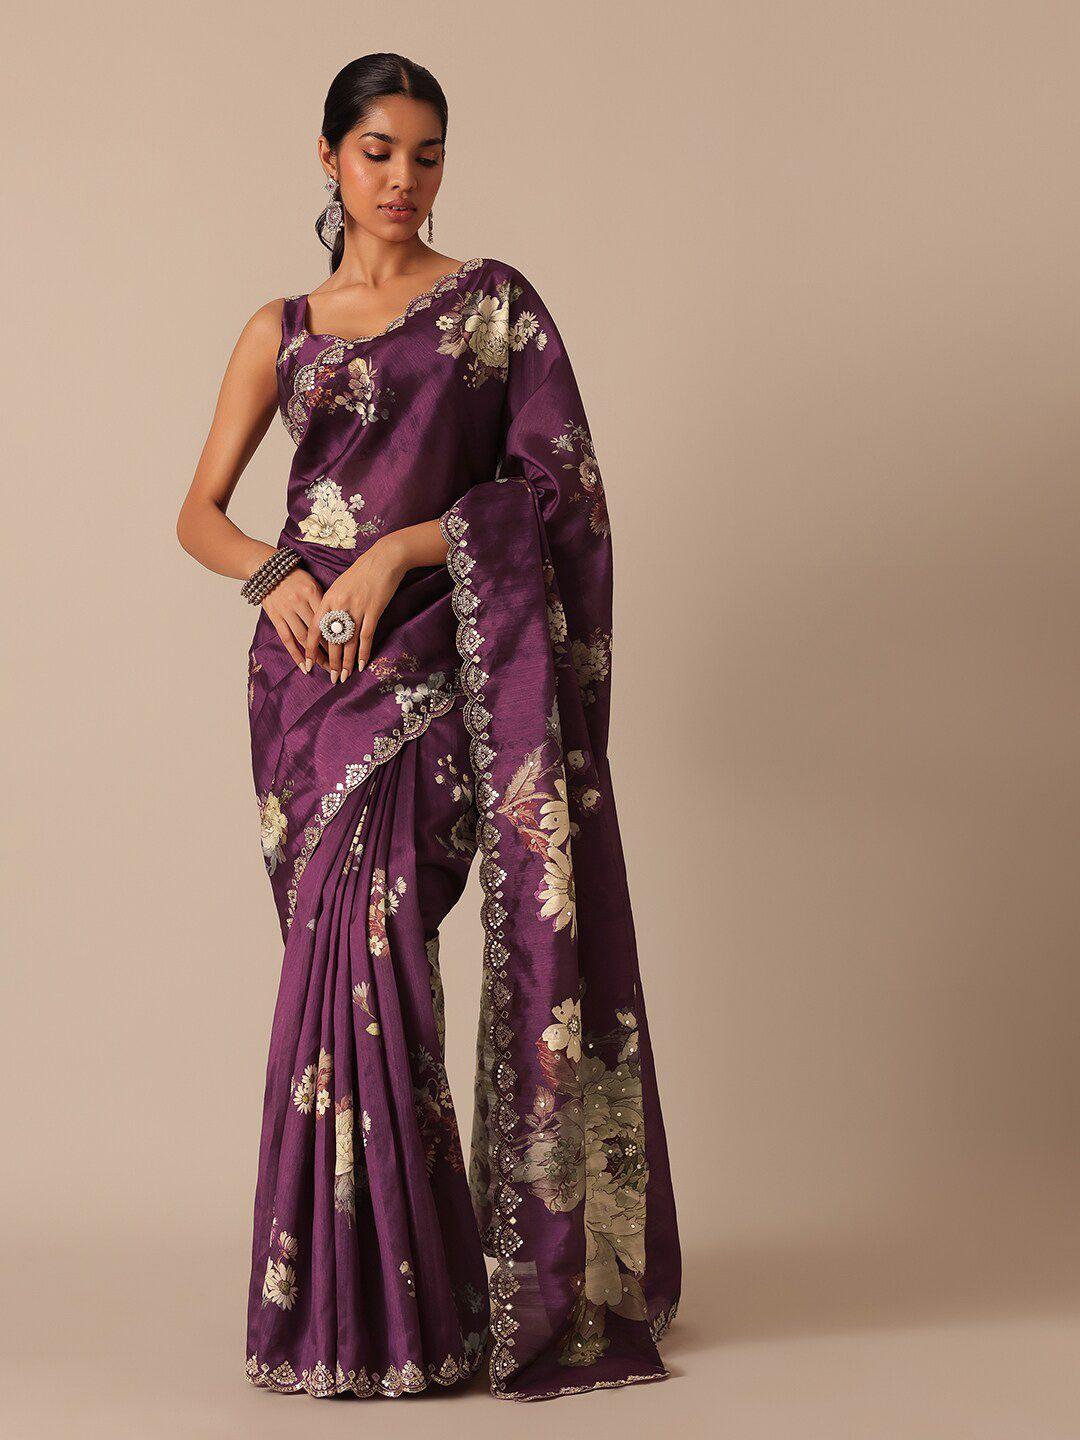 kalki fashion women sarees